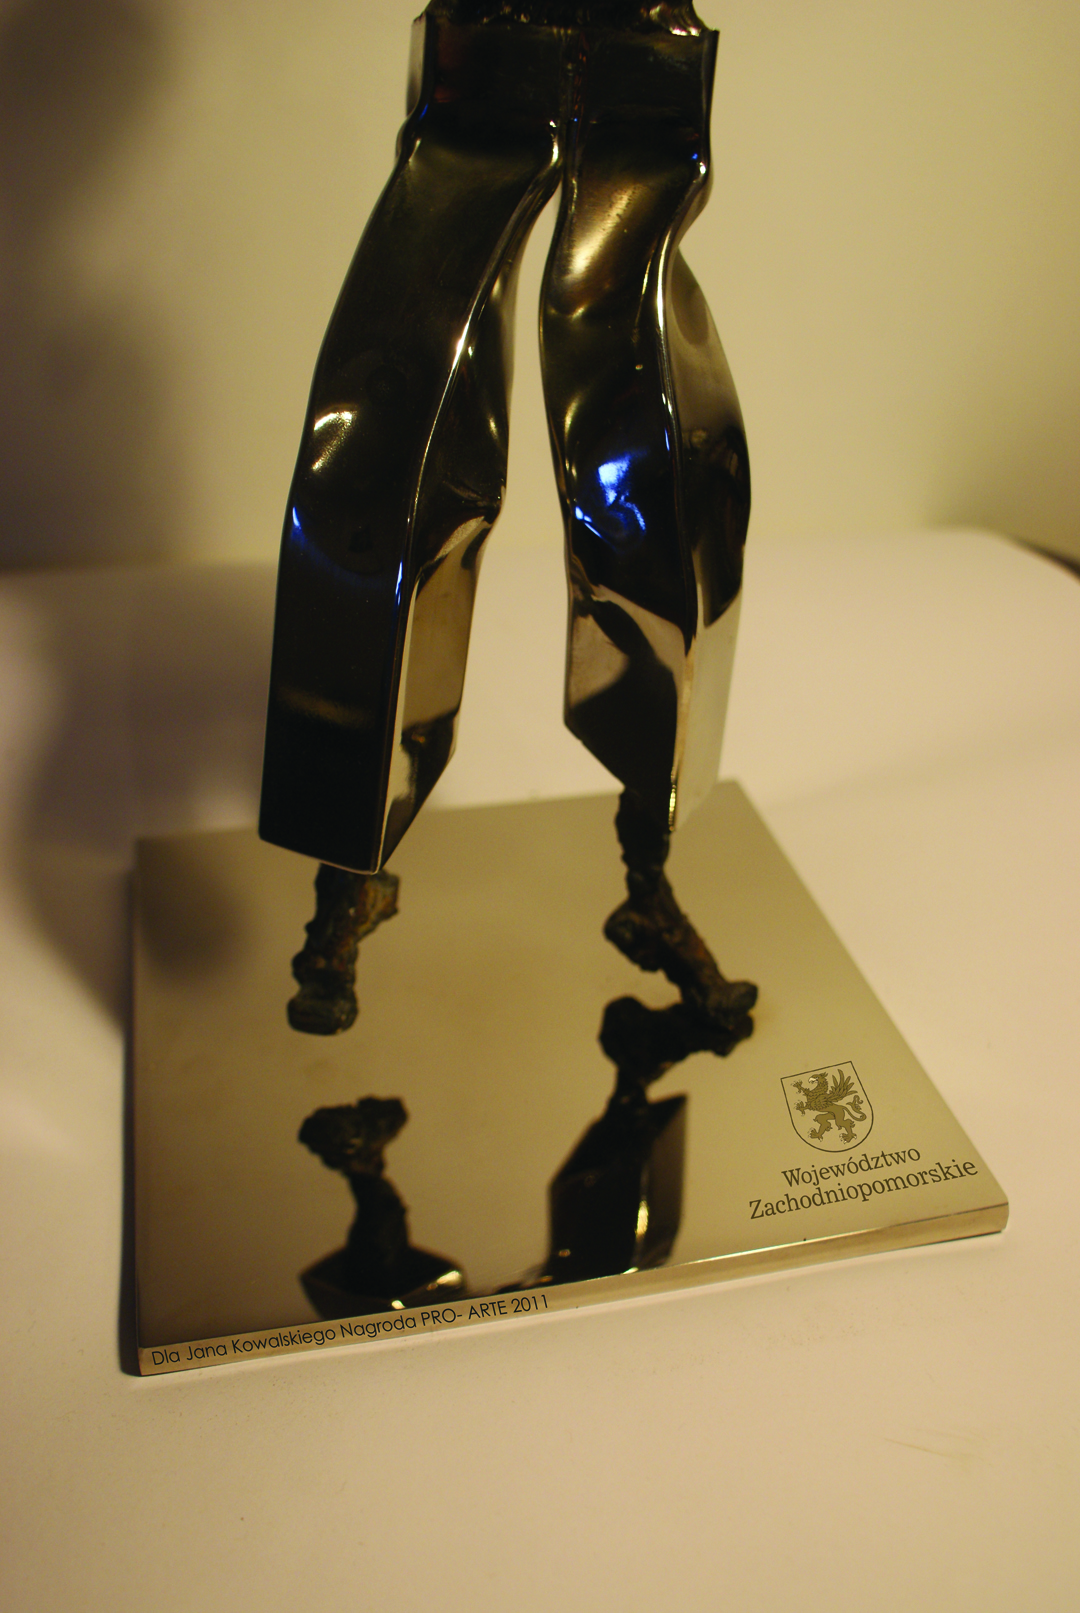 Zdjęcie  przedstawia statuetkę, która jest wręczana jako Nagroda Pro Arte Marszałka Województwa Zachodniopomorskiego